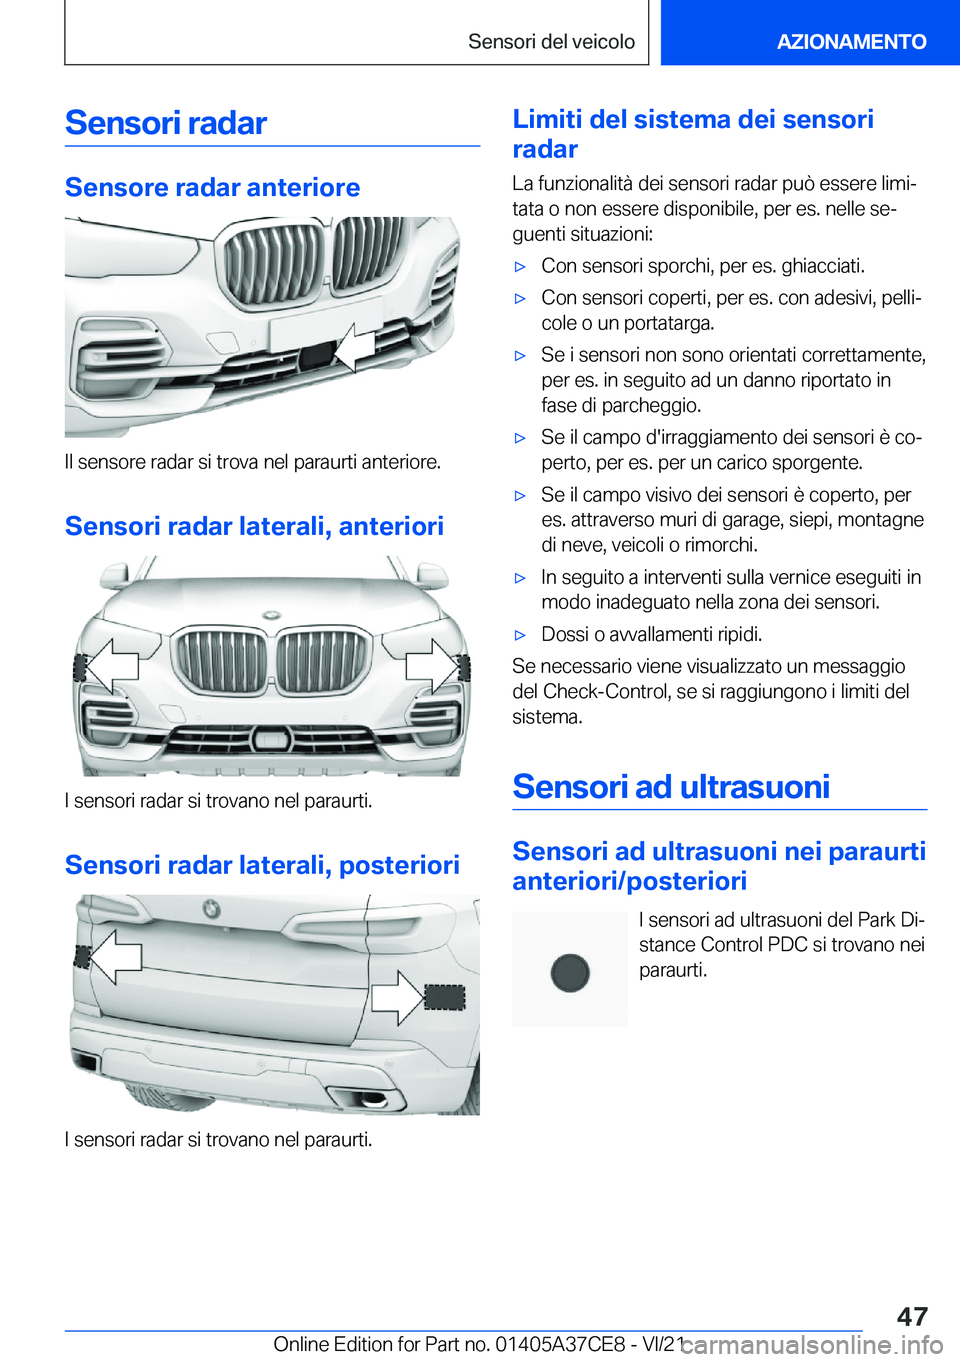 BMW X5 2022  Libretti Di Uso E manutenzione (in Italian) �S�e�n�s�o�r�i��r�a�d�a�r
�S�e�n�s�o�r�e��r�a�d�a�r��a�n�t�e�r�i�o�r�e
�I�l��s�e�n�s�o�r�e��r�a�d�a�r��s�i��t�r�o�v�a��n�e�l��p�a�r�a�u�r�t�i��a�n�t�e�r�i�o�r�e�.�S�e�n�s�o�r�i��r�a�d�a�r�